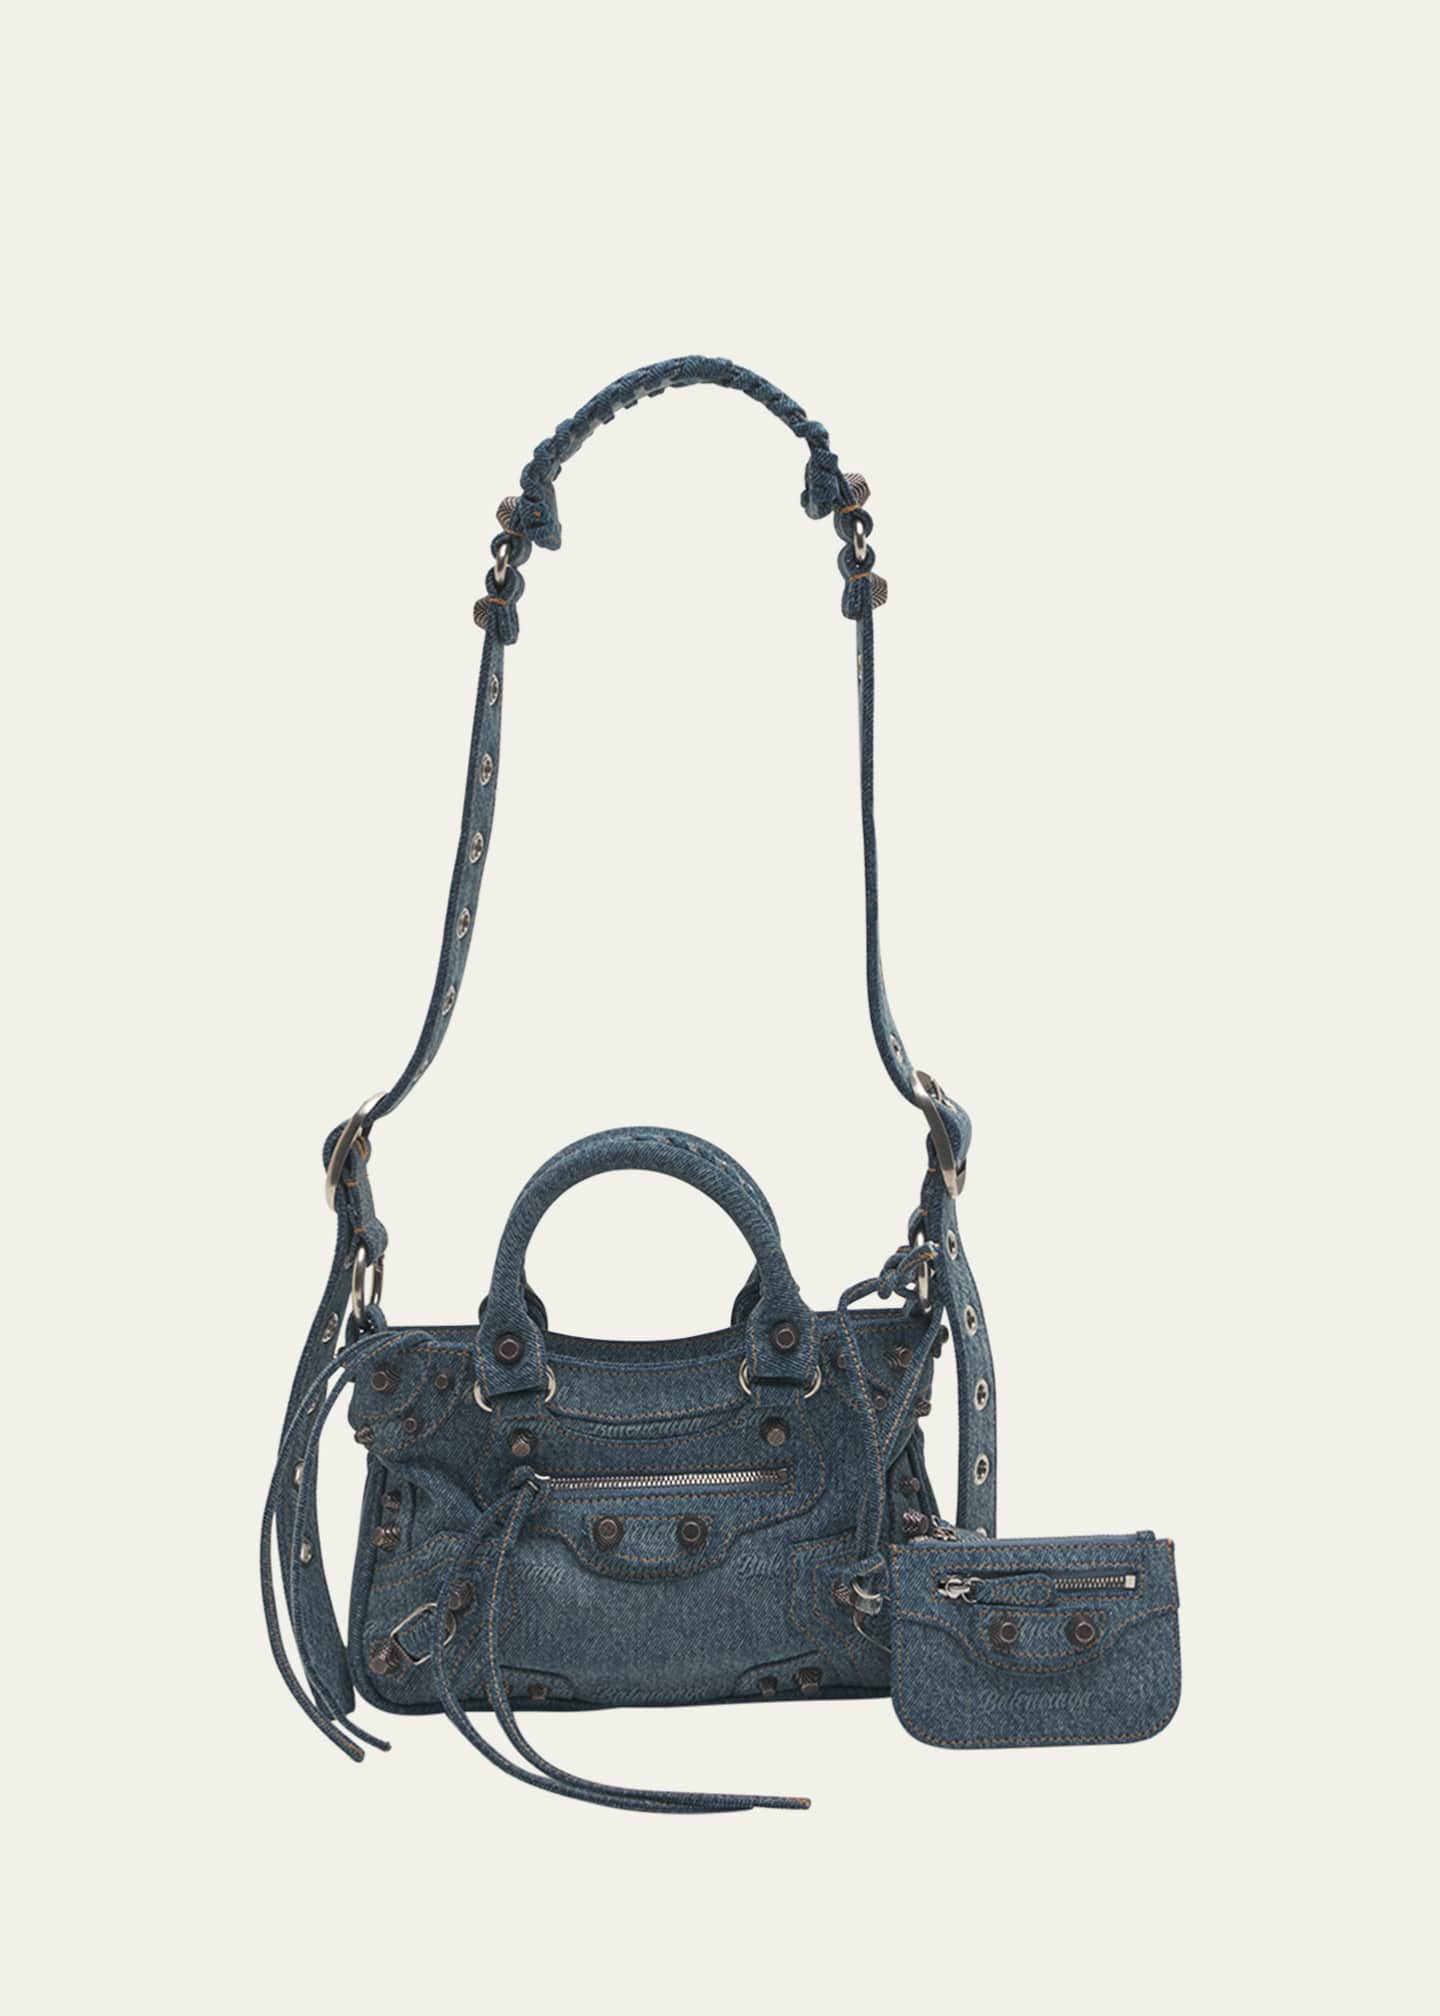 Balenciaga Women's Neo Cagole City Small Handbag